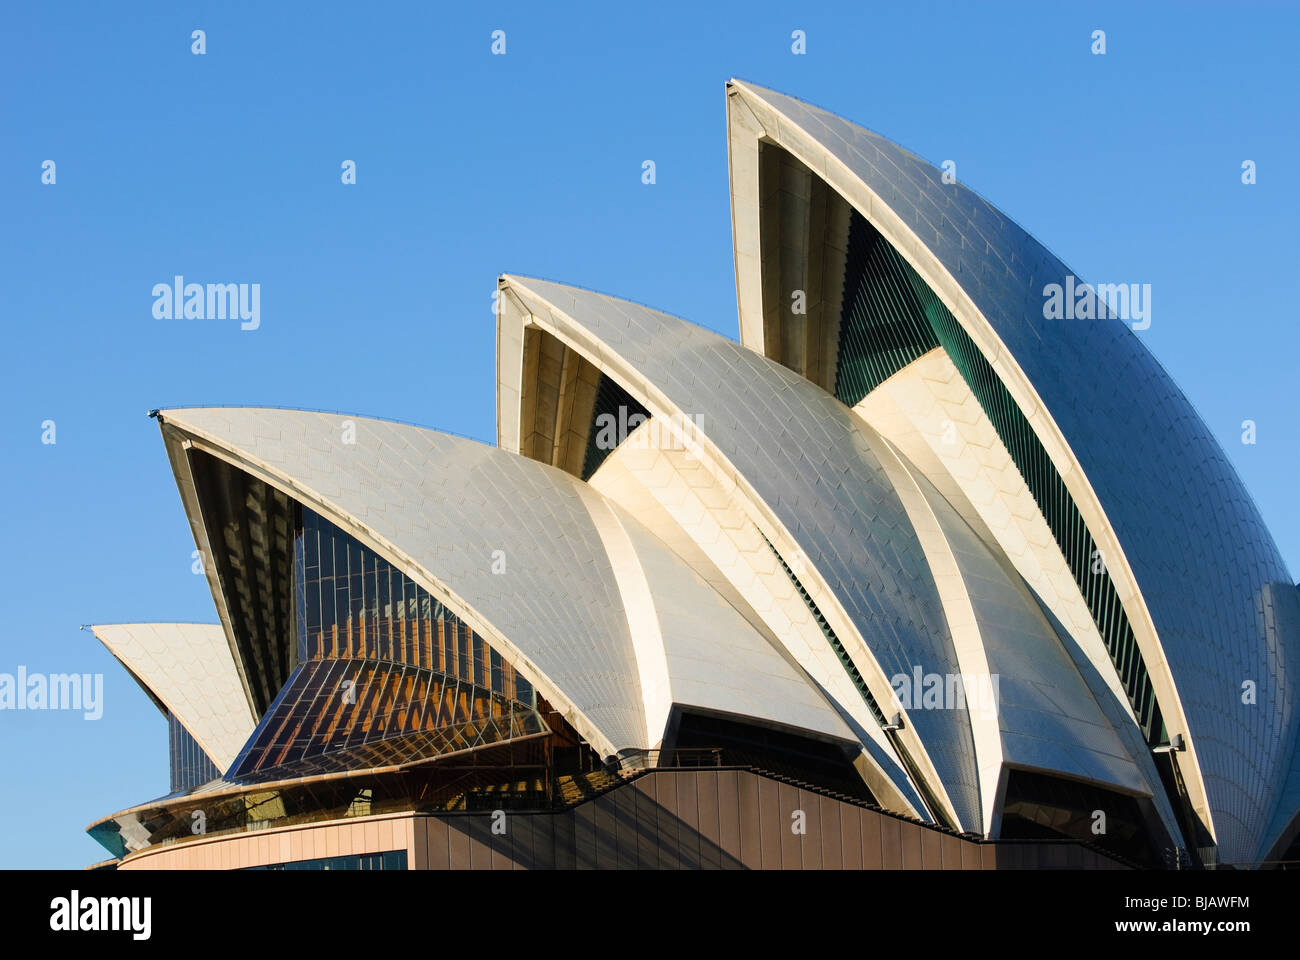 L'iconica Opera House di Sydney la spettacolare tetto curvo. Foto Stock